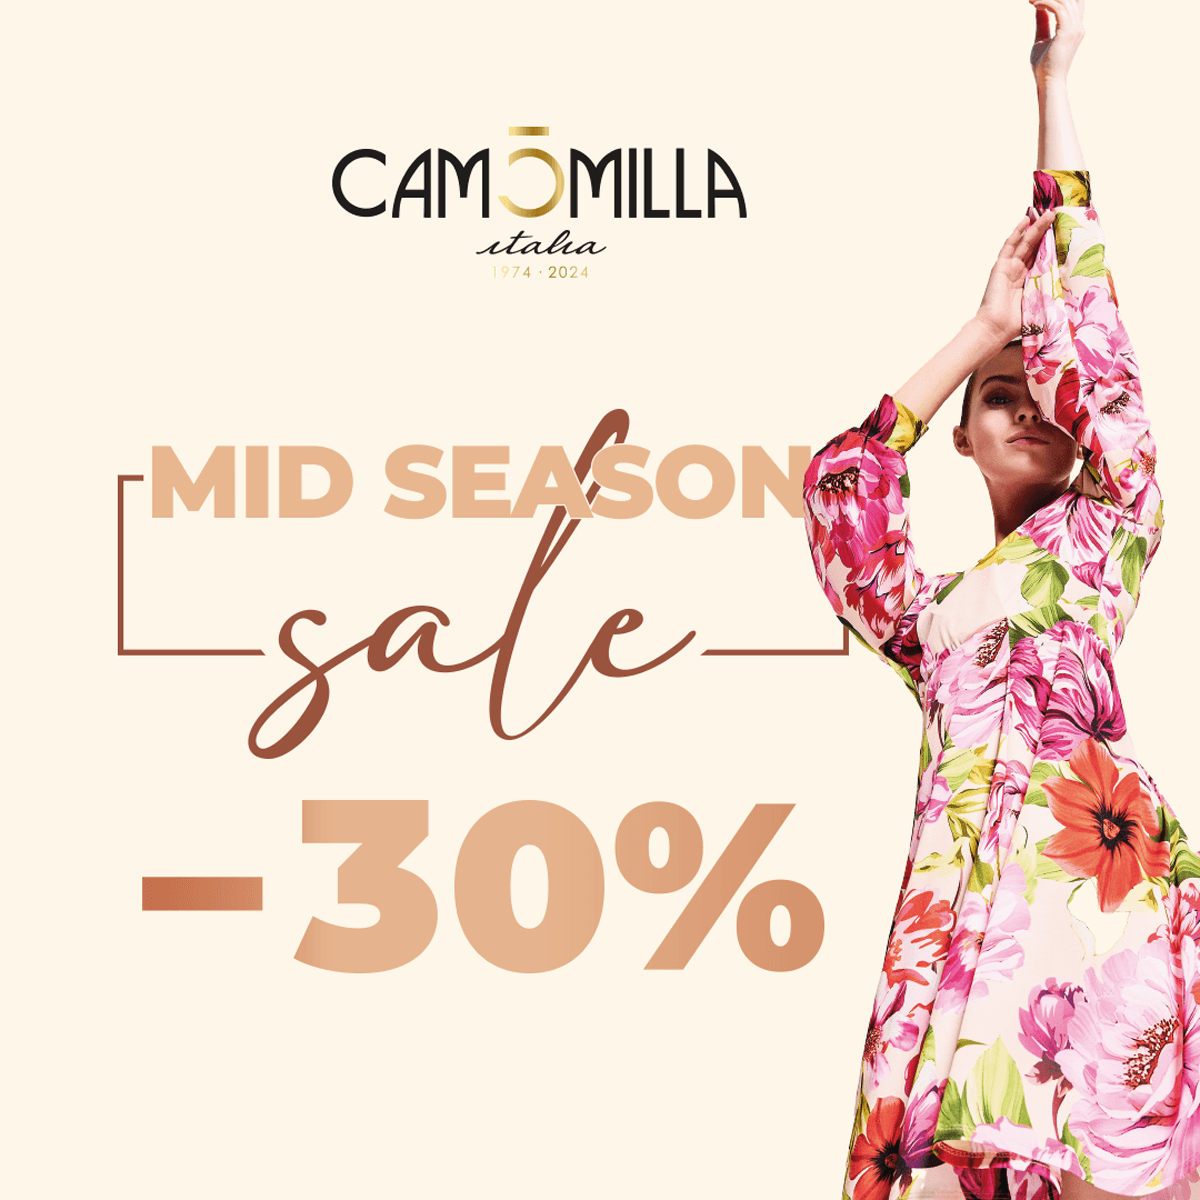 Mid Season Sale -30% da Camomilla Italia